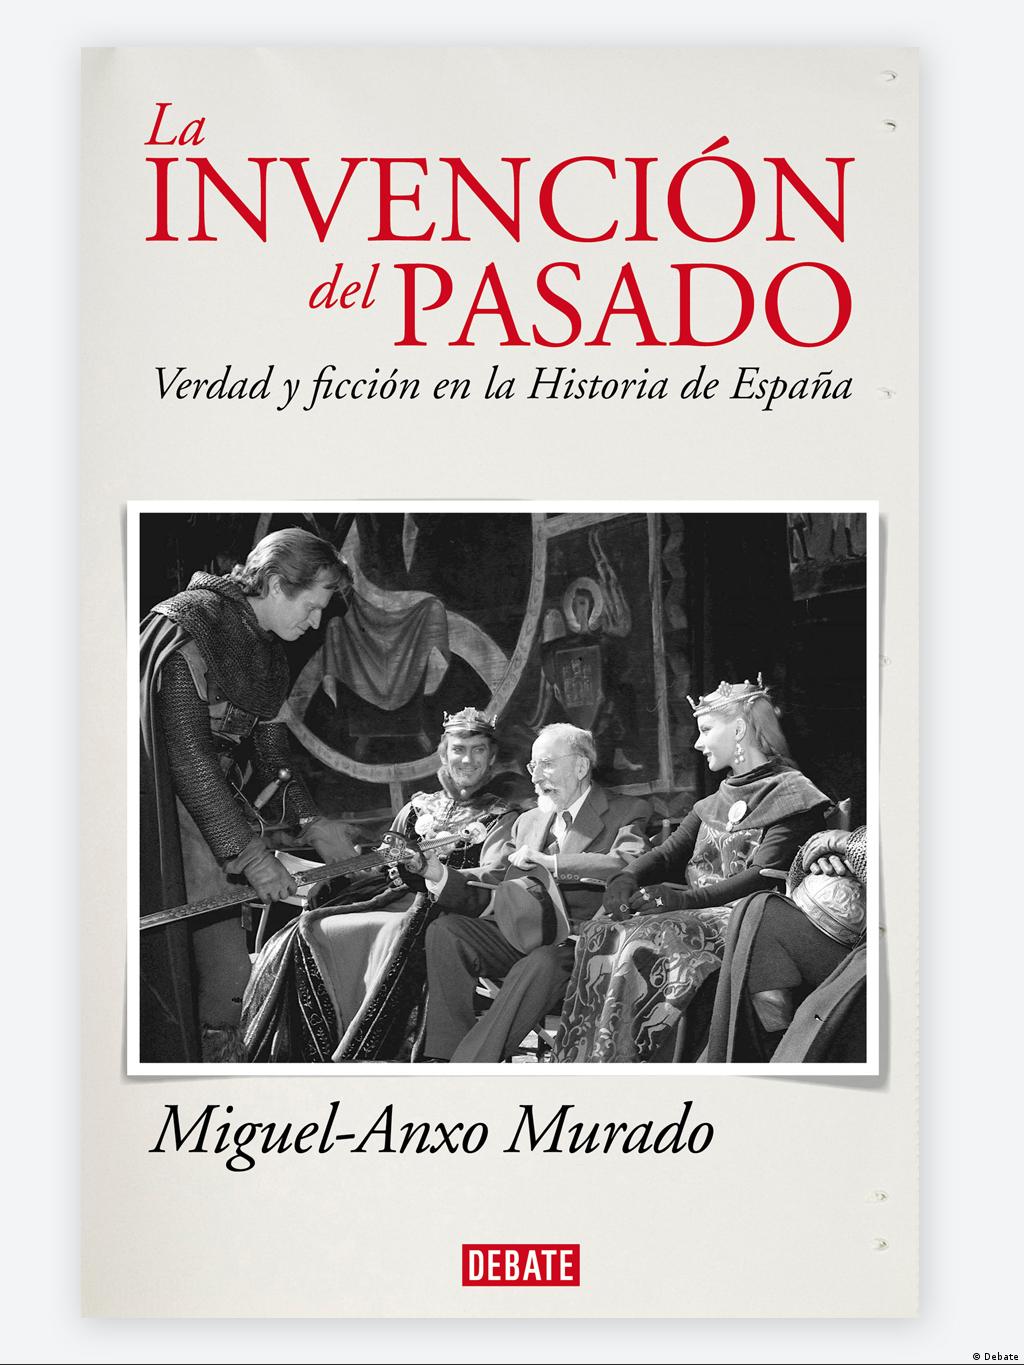 Portada del libro de Anxo-Murado en la que se ve al filólogo e historiador Menéndez Pidal durante el rodaje de la película 'El Cid'